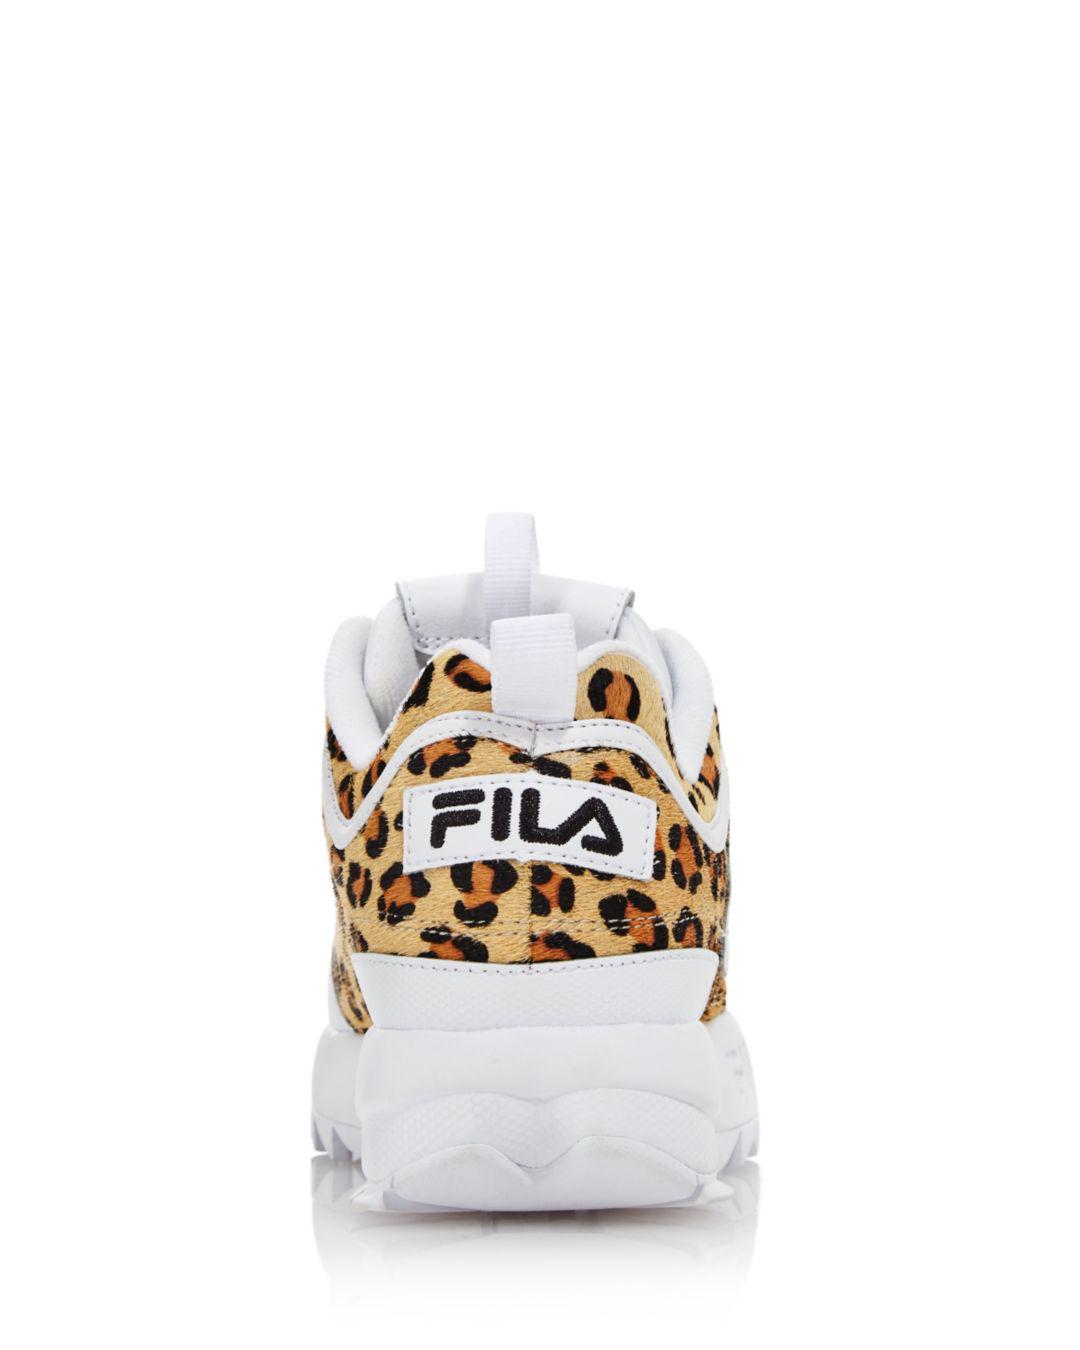 Fila Women's Disruptor 2 Leopard Sneakers in White Gold (White) | Lyst